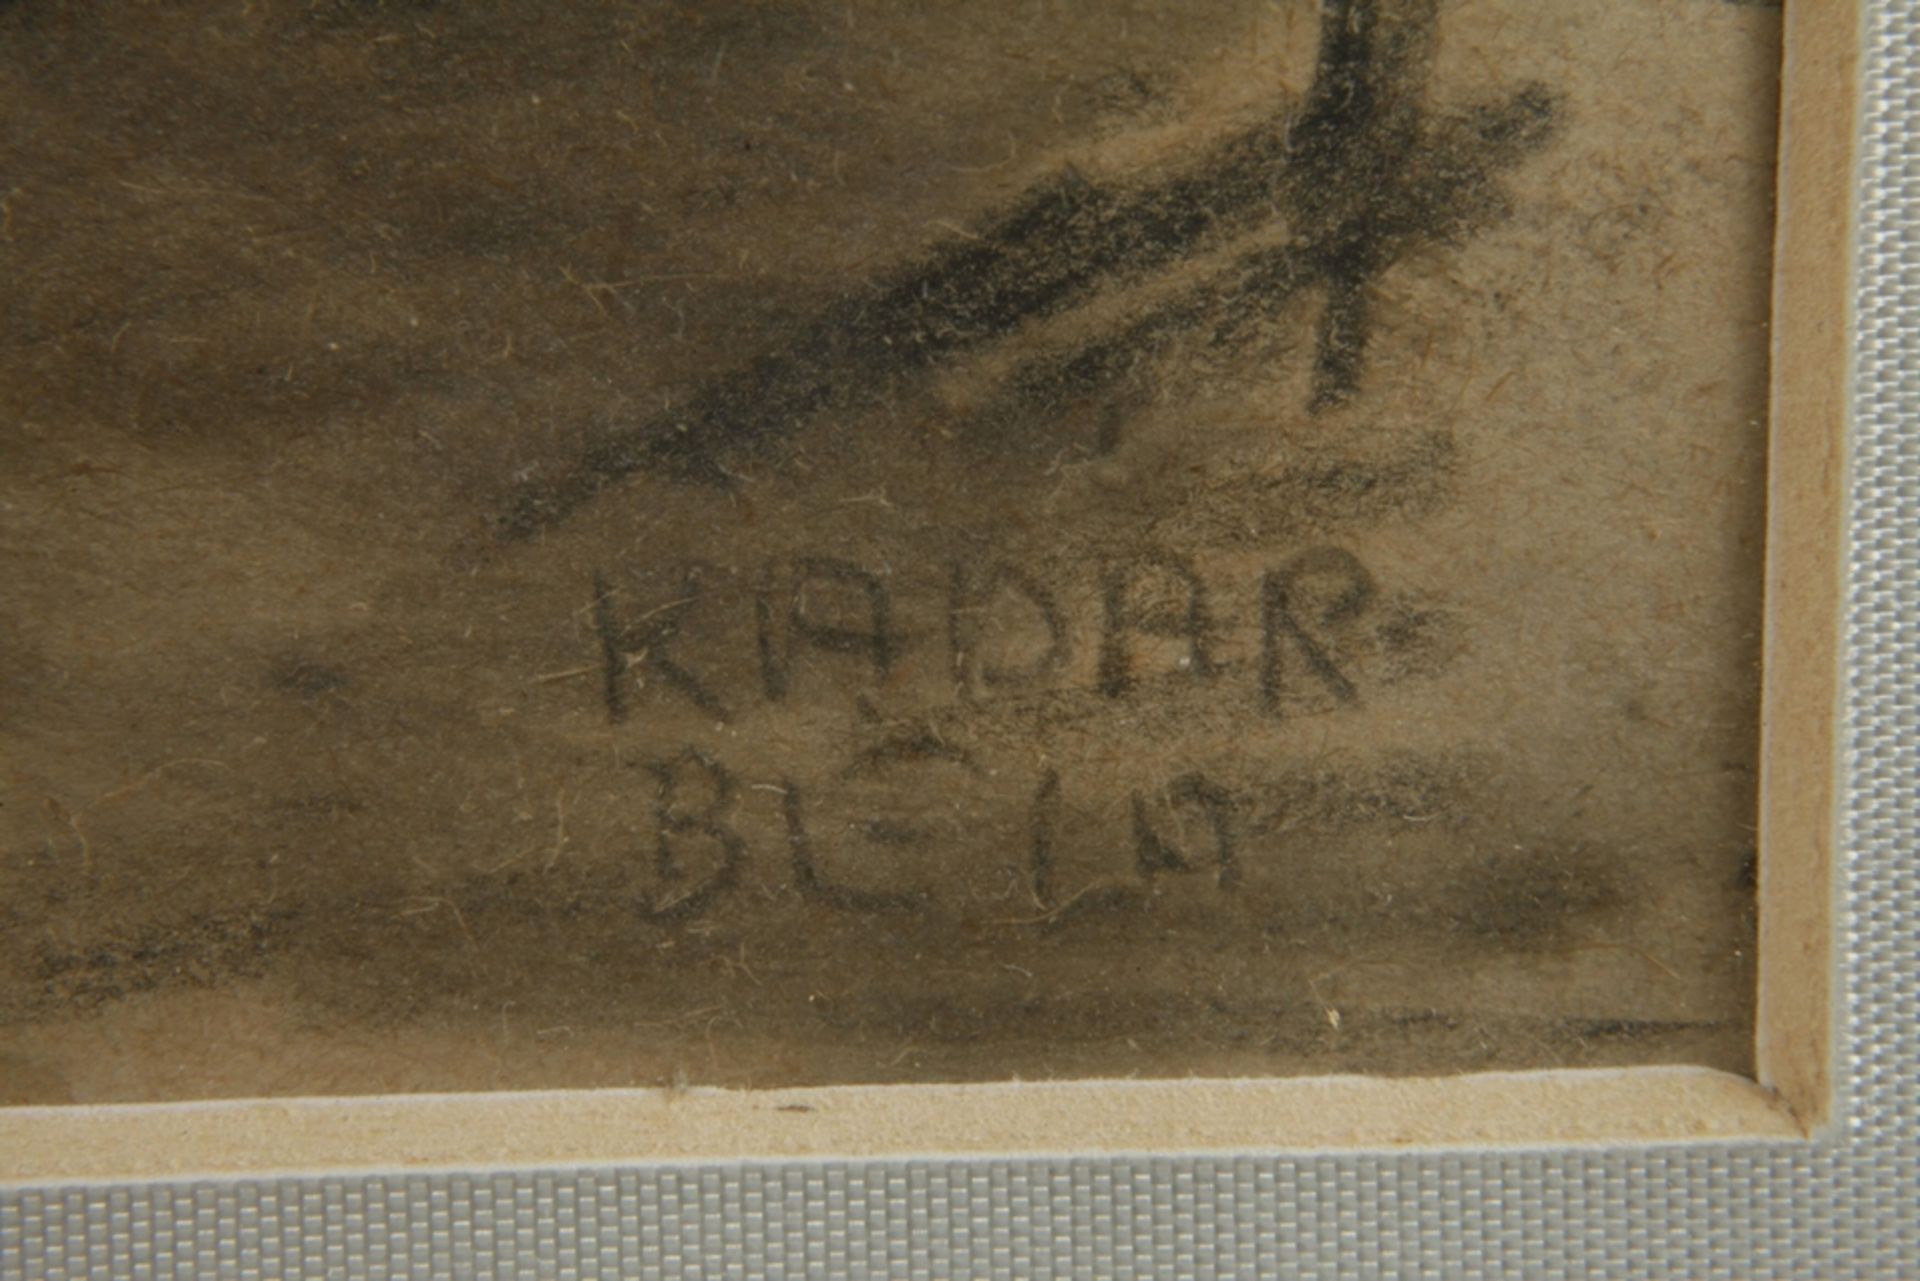 Béla Kádár, Lying Nudes - Image 3 of 3